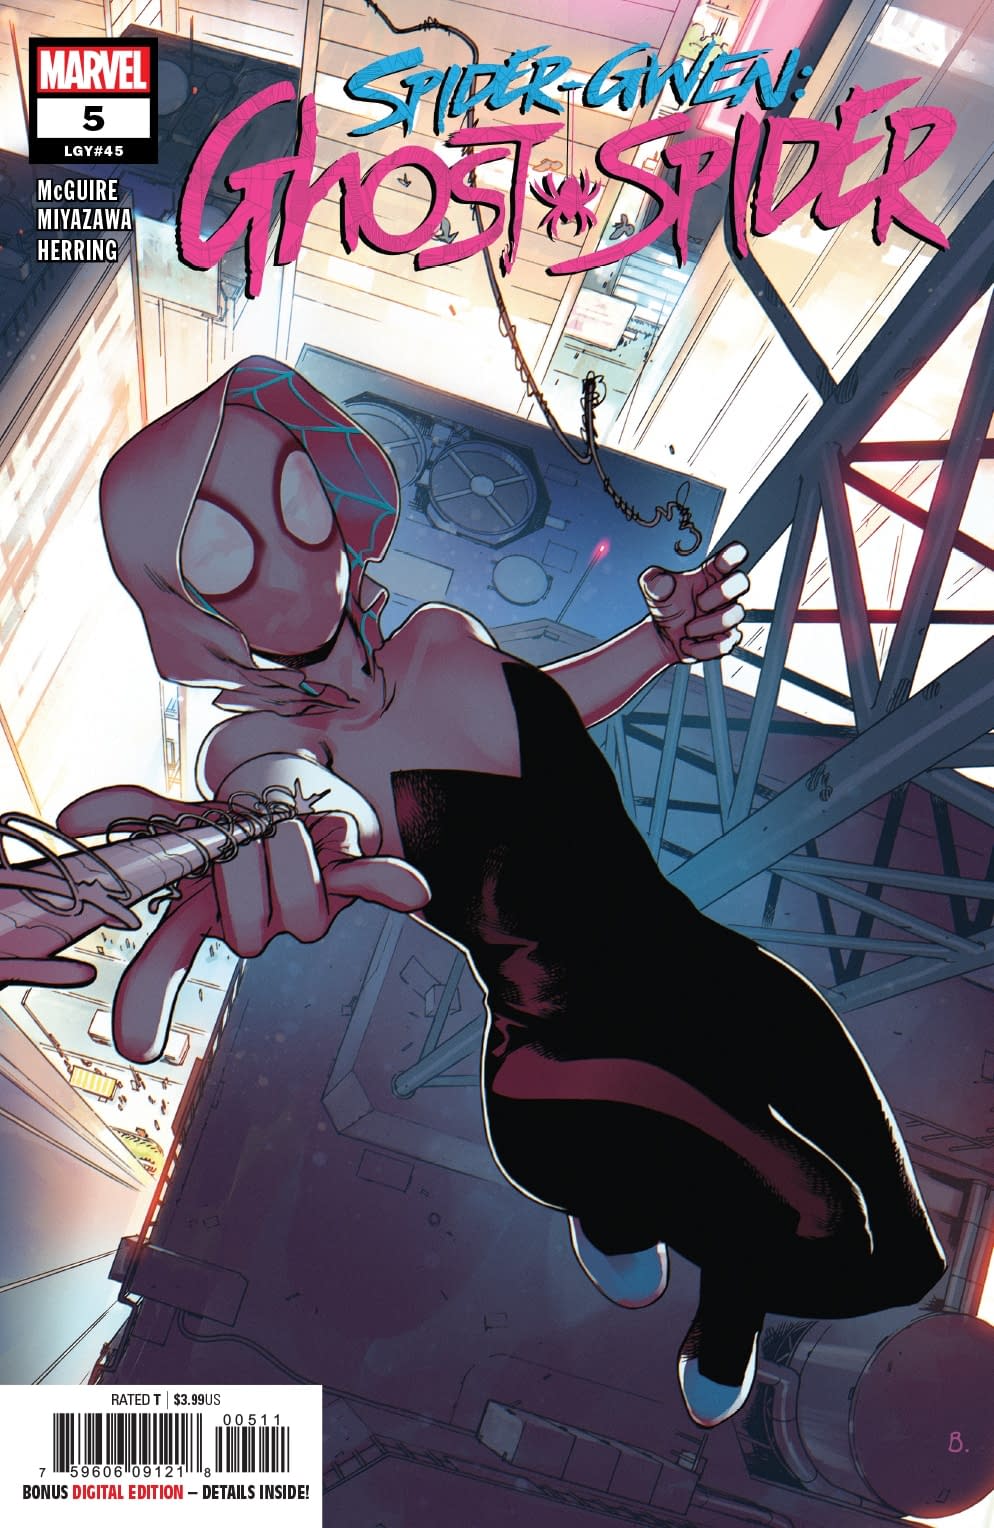 Spider-Gwen is a One-Woman Gun Control Machine in Next Week's Ghost Spider #5